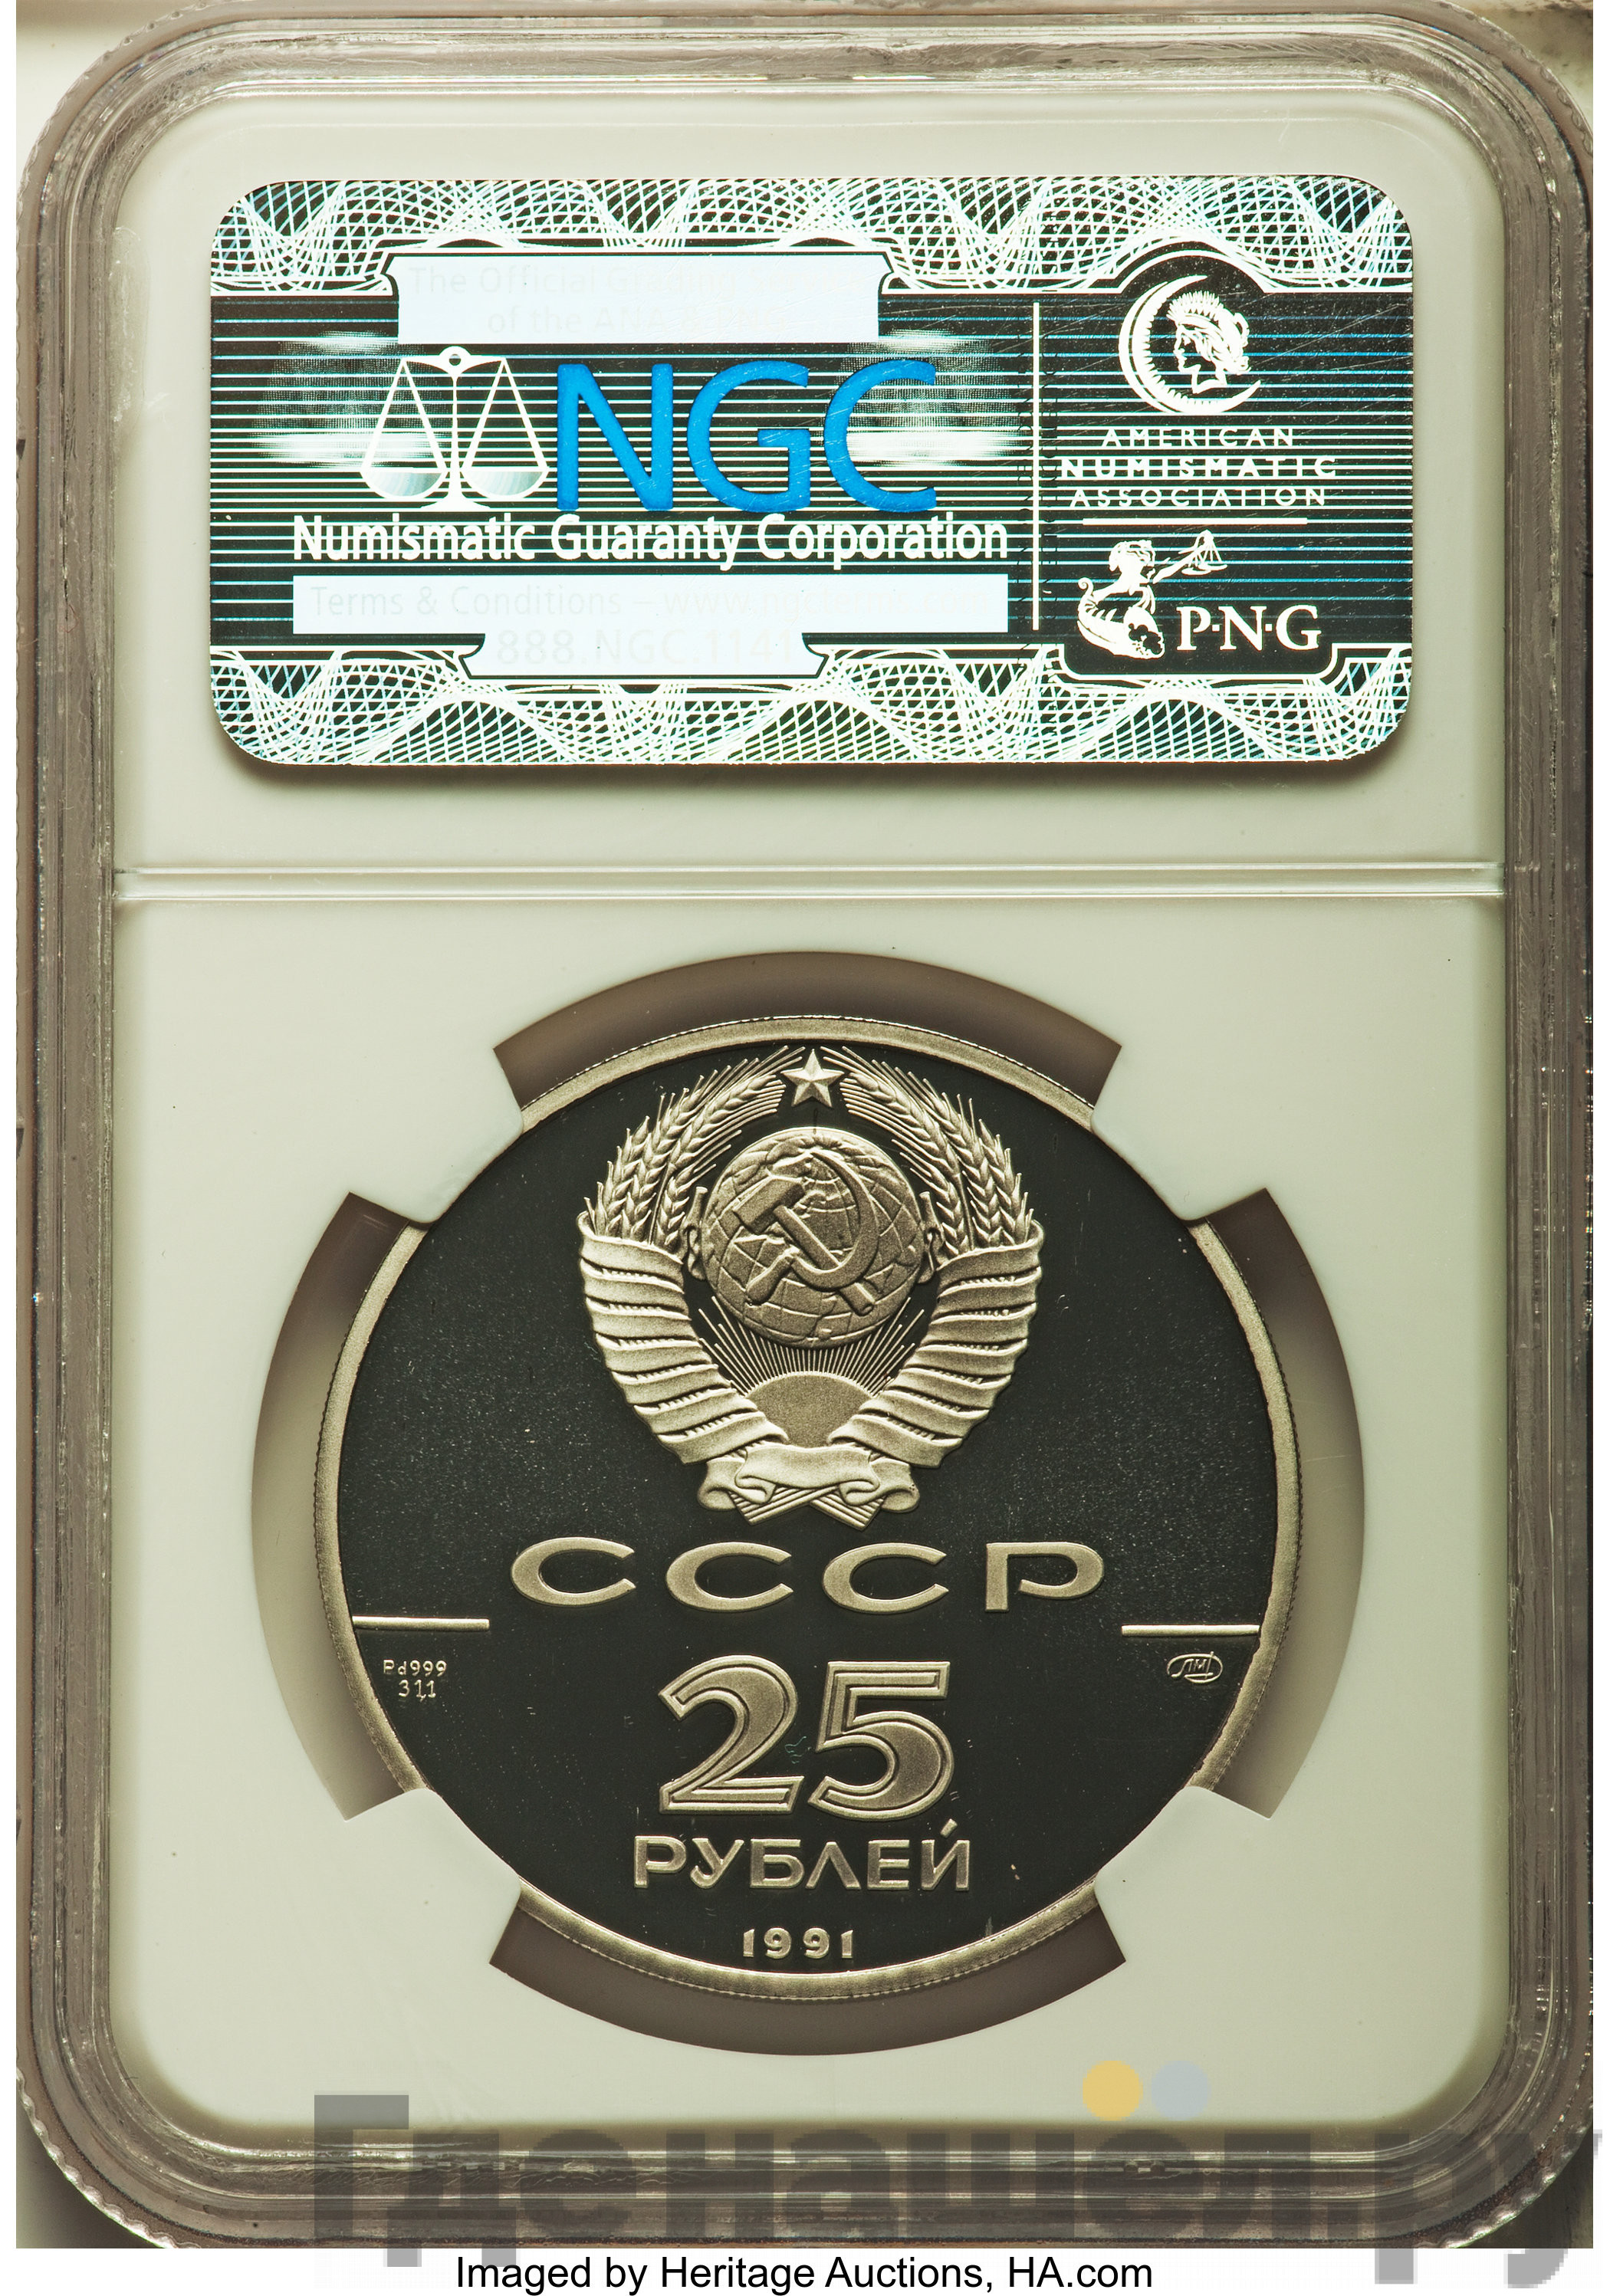 25 рублей 1991 года